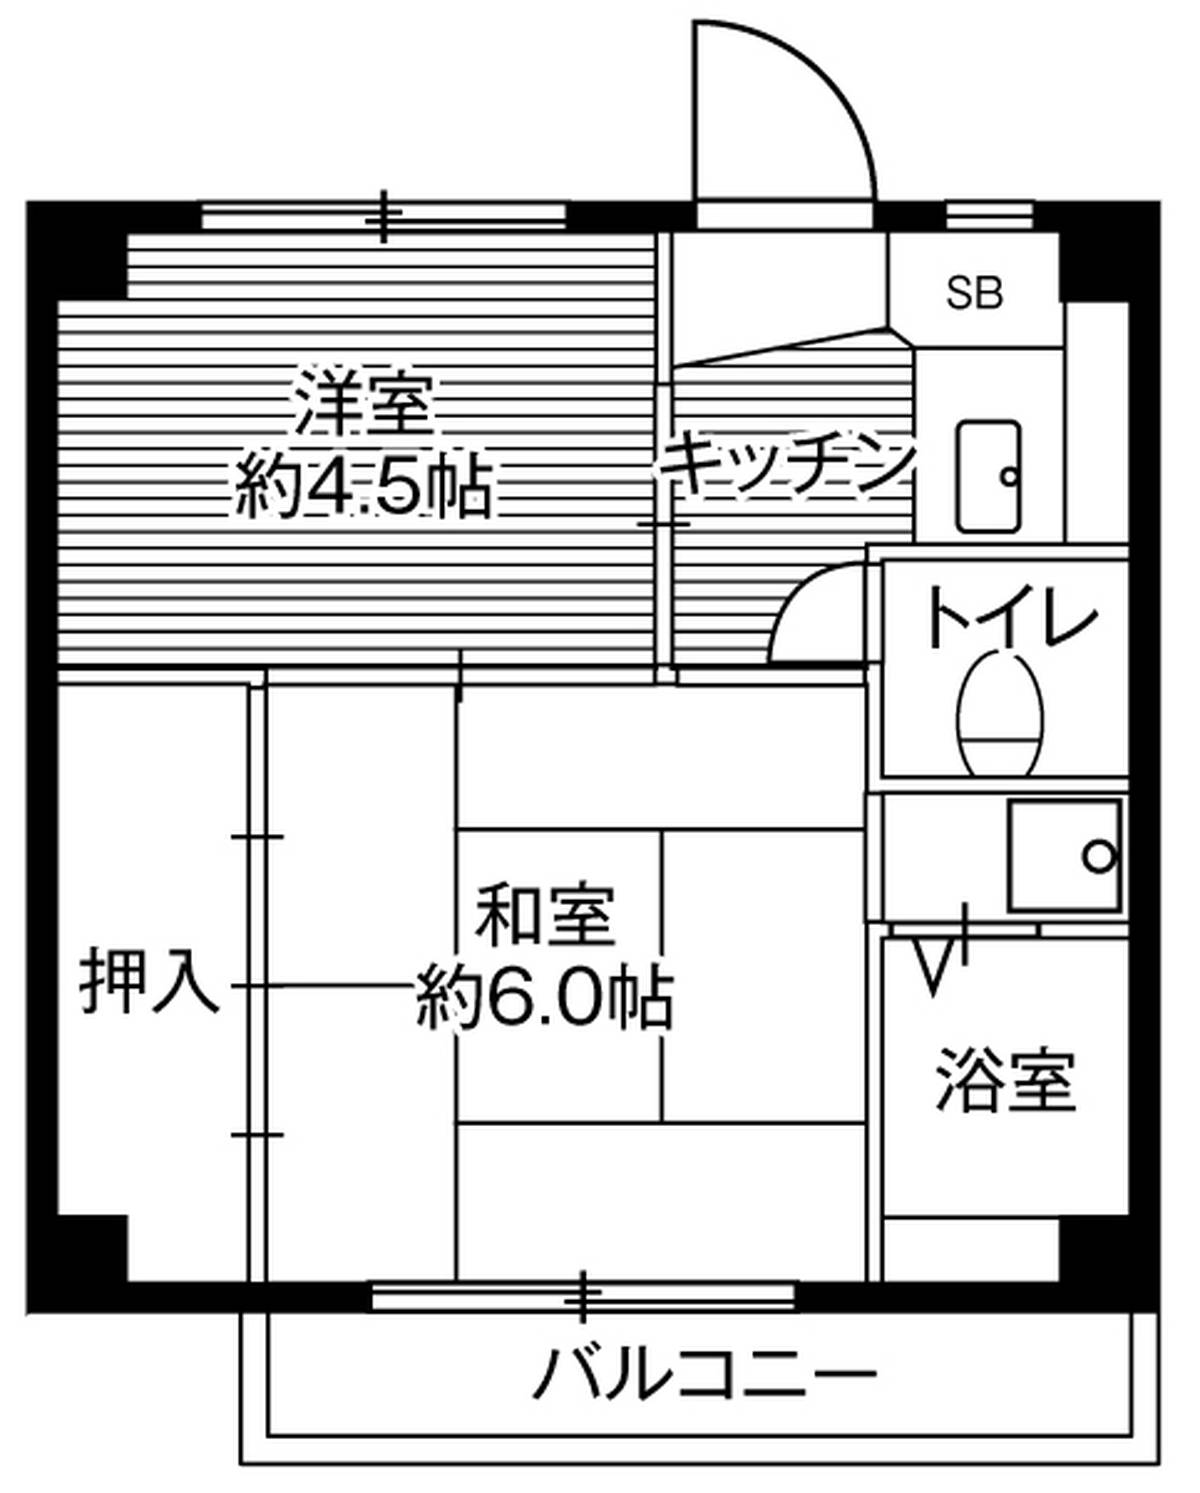 Sơ đồ phòng 2K của Village House Iriyamazu ở Yokosuka-shi